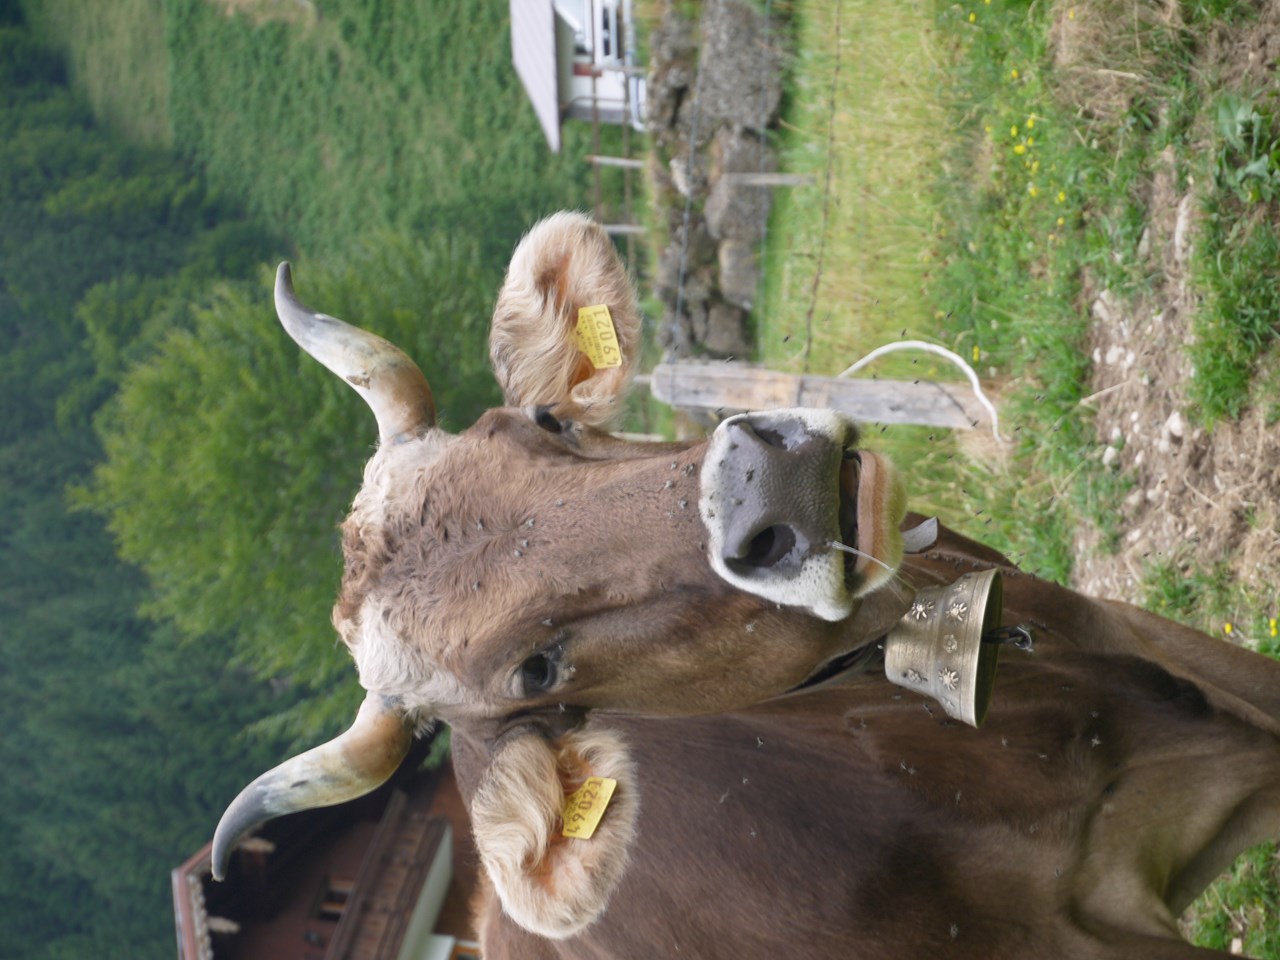 Bauernhof "Almfrieden" Our animals Cow mooooo!